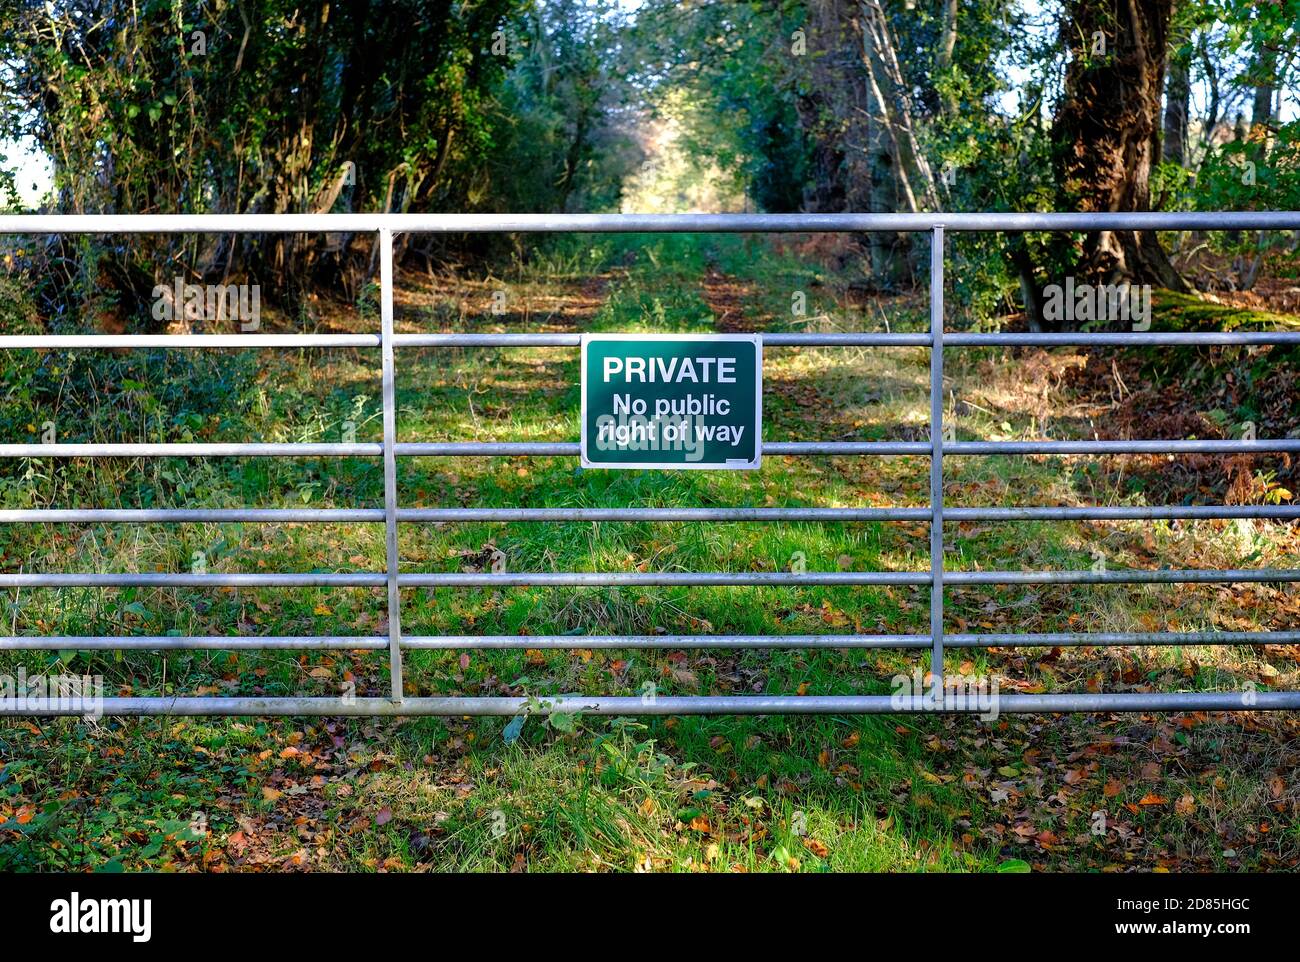 privado no hay letrero público del derecho de la manera en la puerta de la granja del metal, norfolk, inglaterra Foto de stock